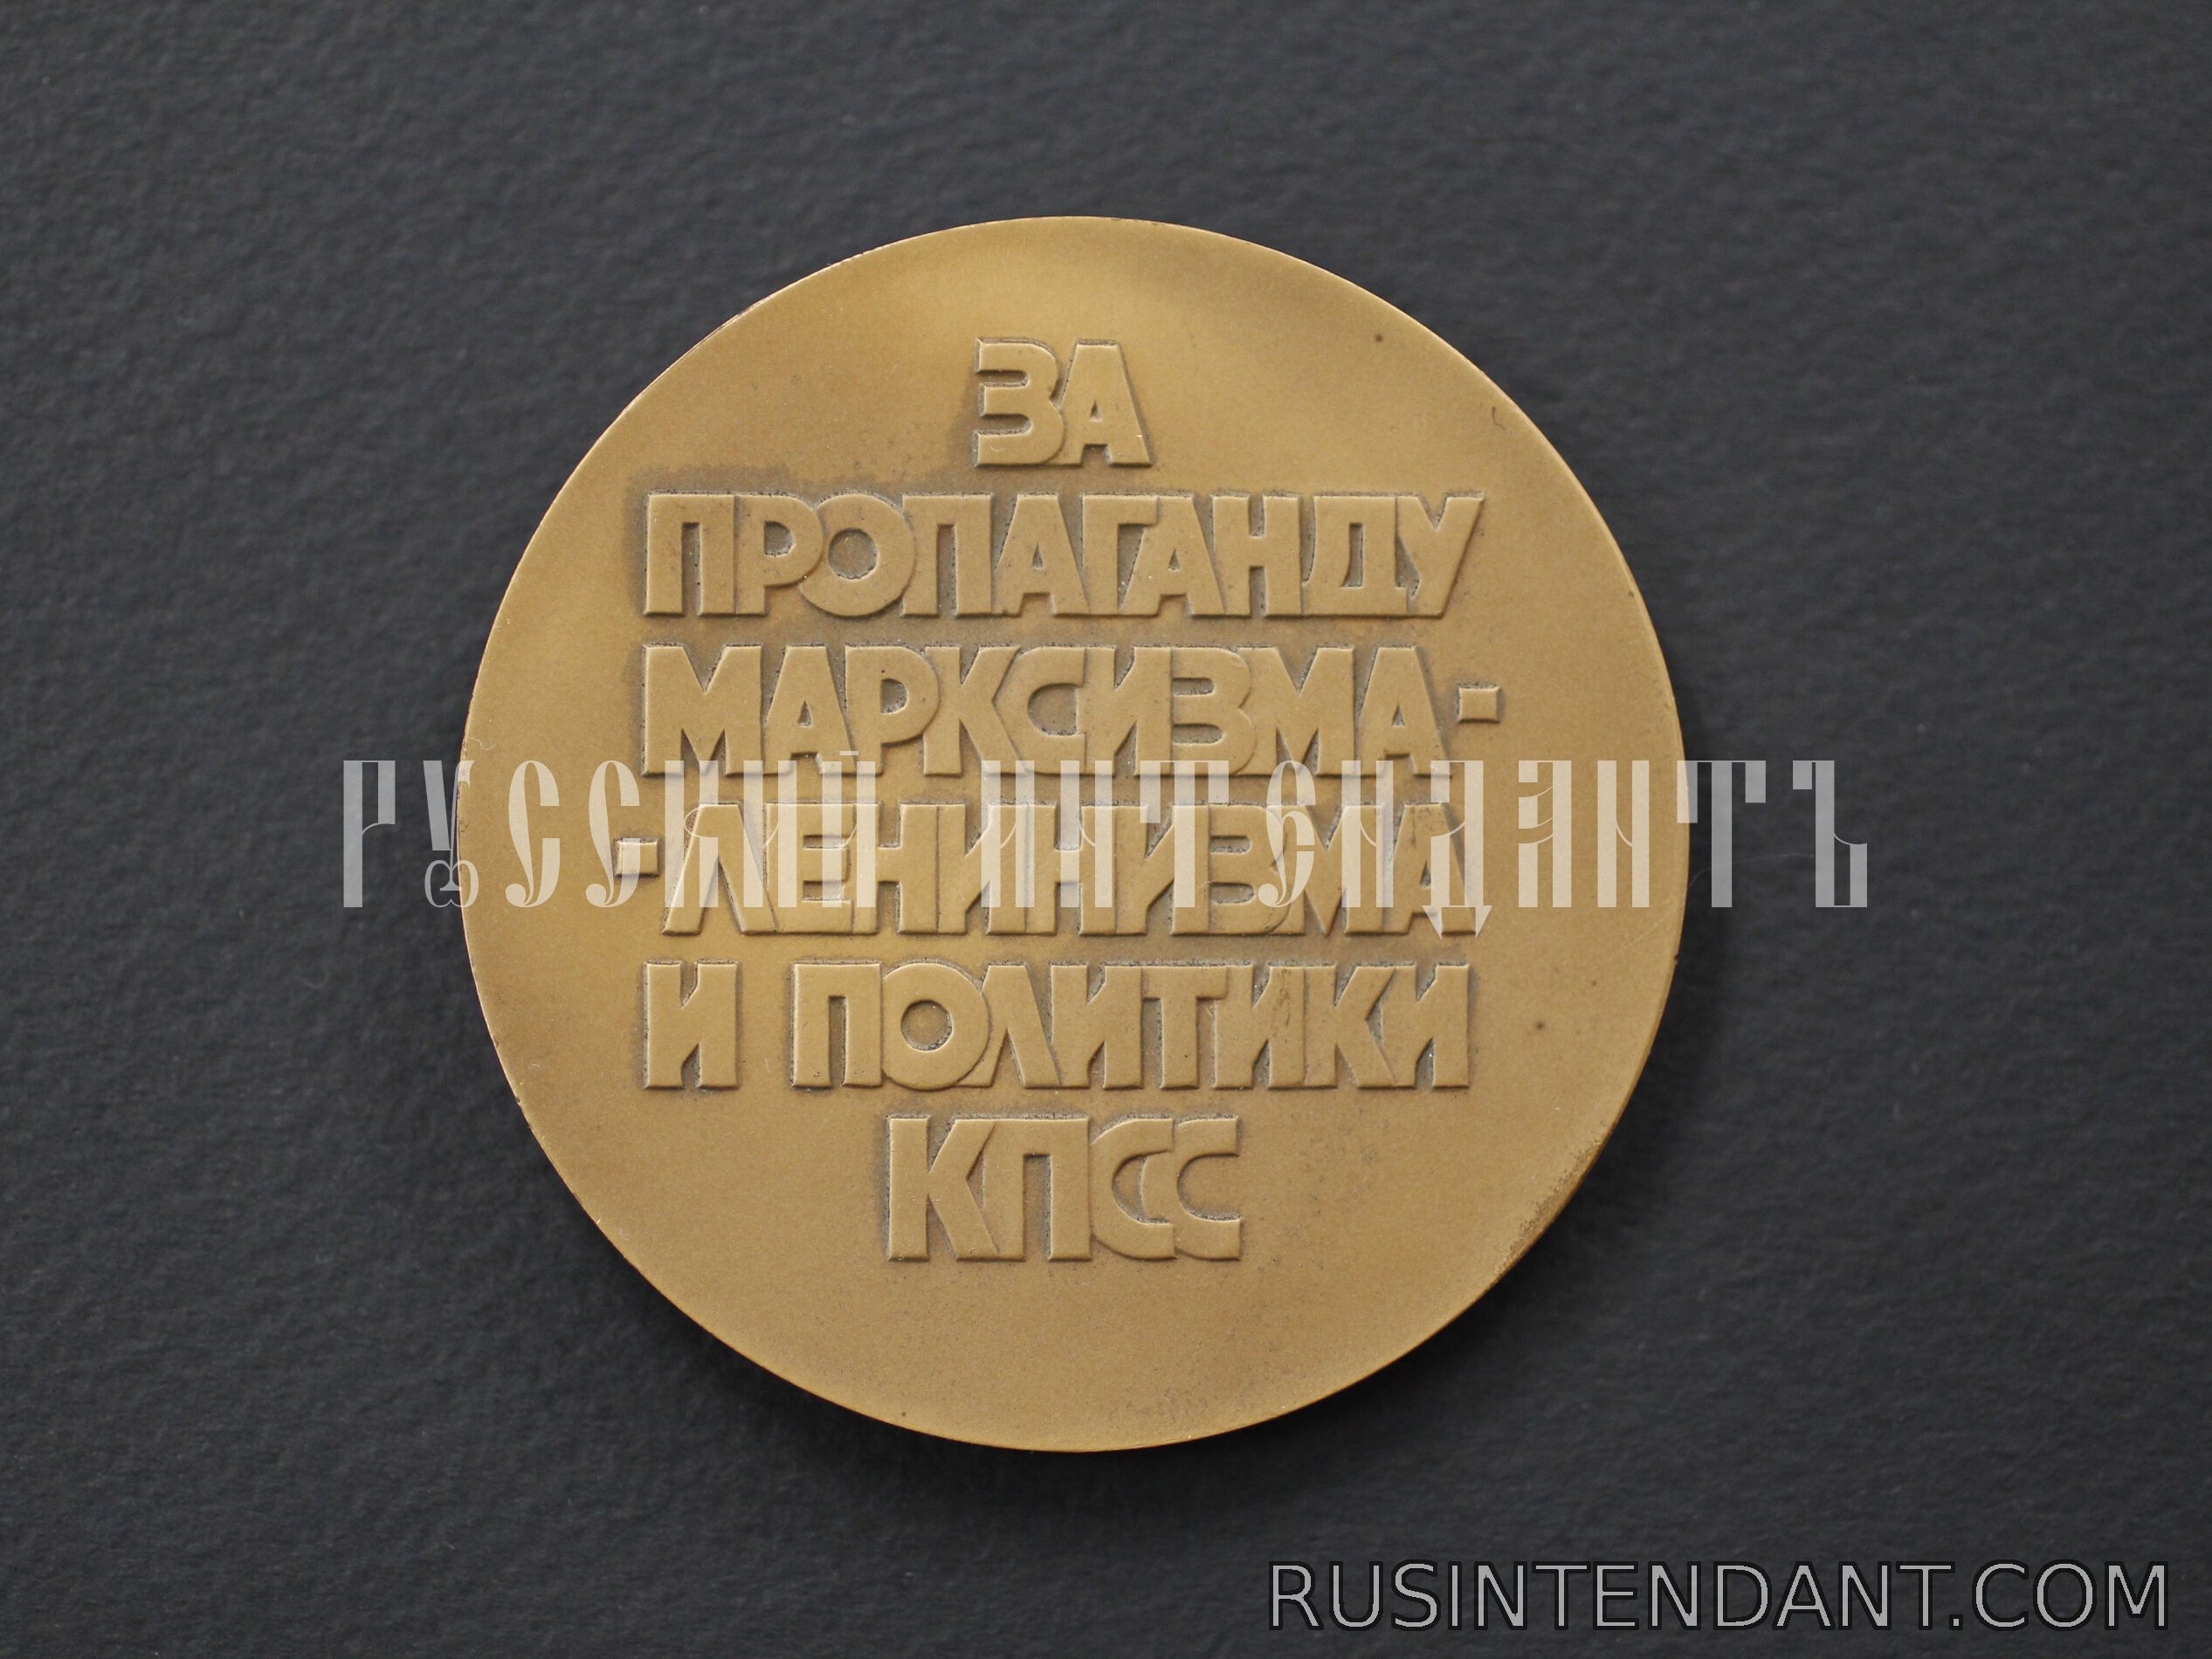 Фото 2: Настольная медаль «За пропаганду Марксизма-Ленинизма и политики КПСС» 